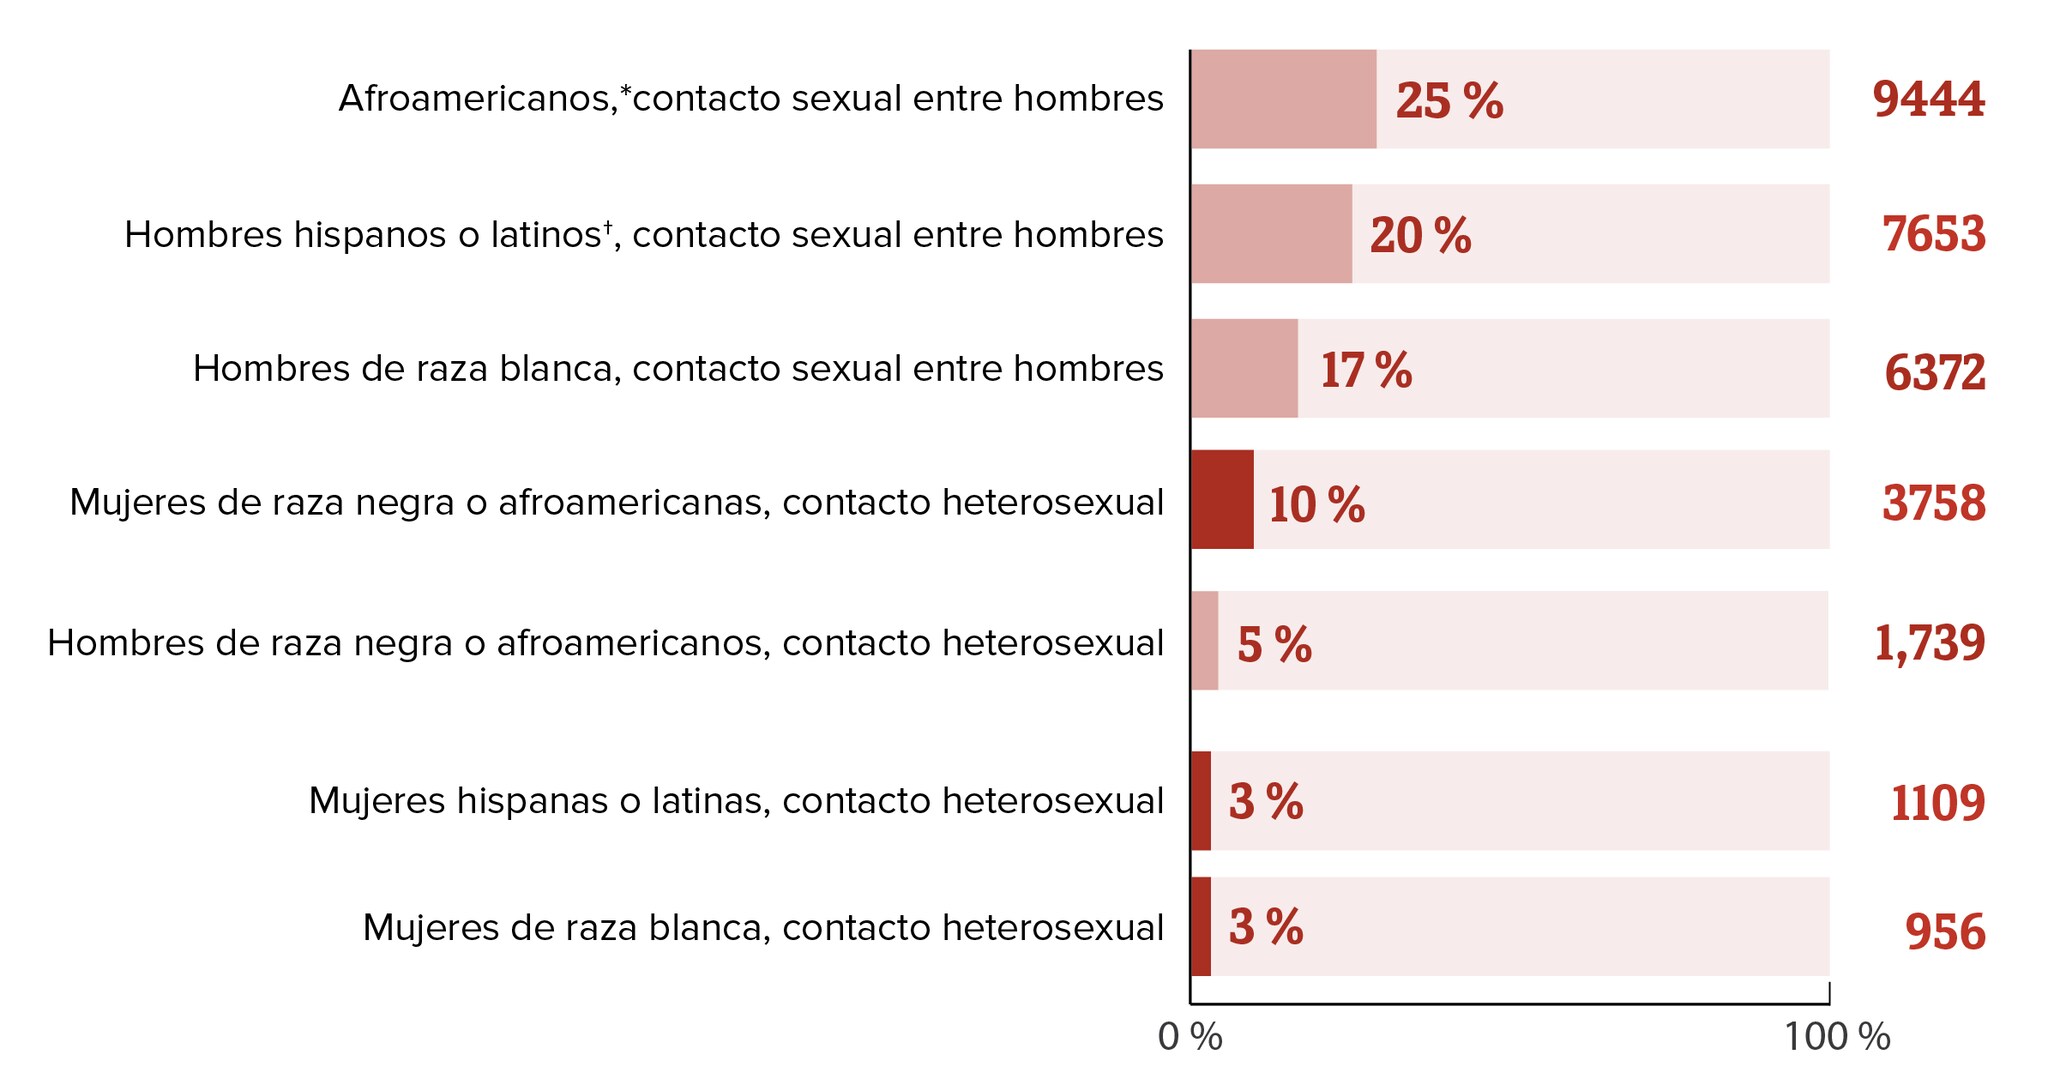 Gráfico de lecturas de texto alternativo El título de este gráfico circular es Diagnósticos nuevos de infección por el VIH en los EE. UU. y áreas dependientes en las subpoblaciones más afectadas, 2018. Este gráfico de barras muestra la cantidad de diagnósticos nuevos de infección por el VIH y los porcentajes para las siguientes subpoblaciones más afectadas: Afroamericanos*, contacto sexual entre hombres, 25  percent (9444); hombres hispanos o latinos †, contacto sexual entre hombres, 20  percent (7653); hombres de raza blanca, contacto sexual entre hombres, 17  percent (6372); mujeres de raza negra o afroamericanas, 10 percent (3758); hombres de raza negra o afroamericanos, contacto heterosexual, 5 percent (1739); mujeres hispanas o latinas, contacto heterosexual, 3  percent (1109); mujeres de raza blanca, contacto heterosexual, 3  percent 956.